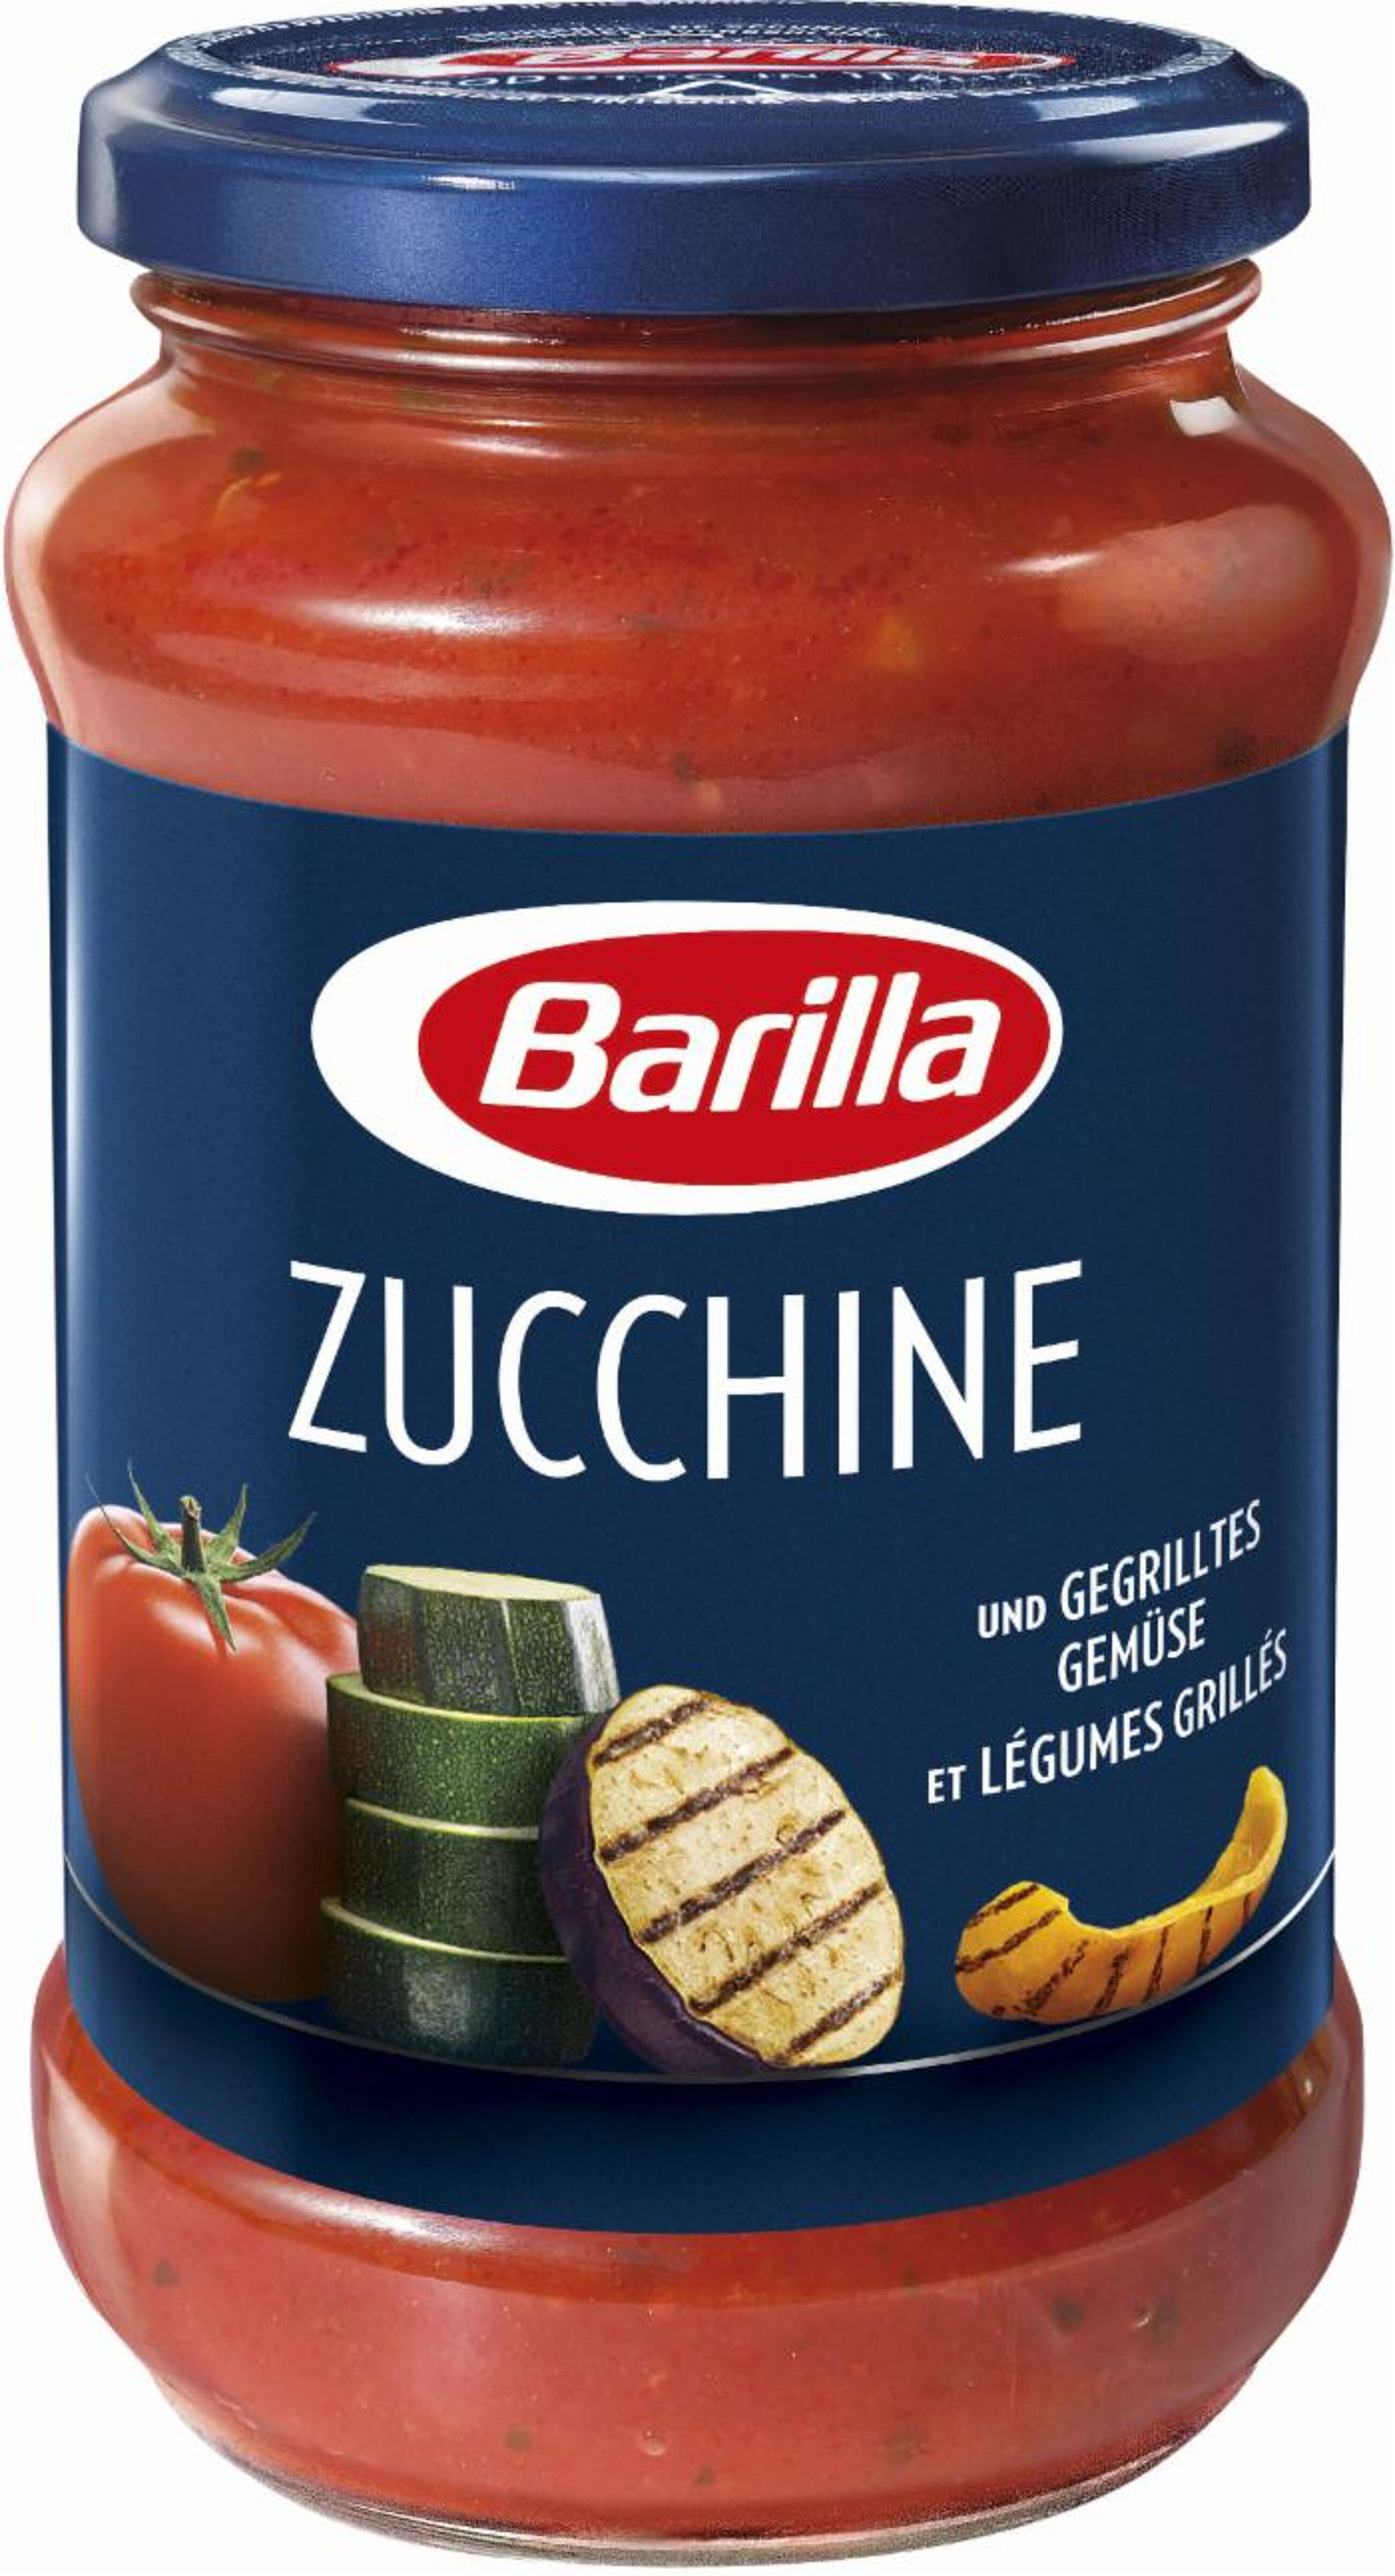 Zucchine et légumes grillés - Produkt - fr